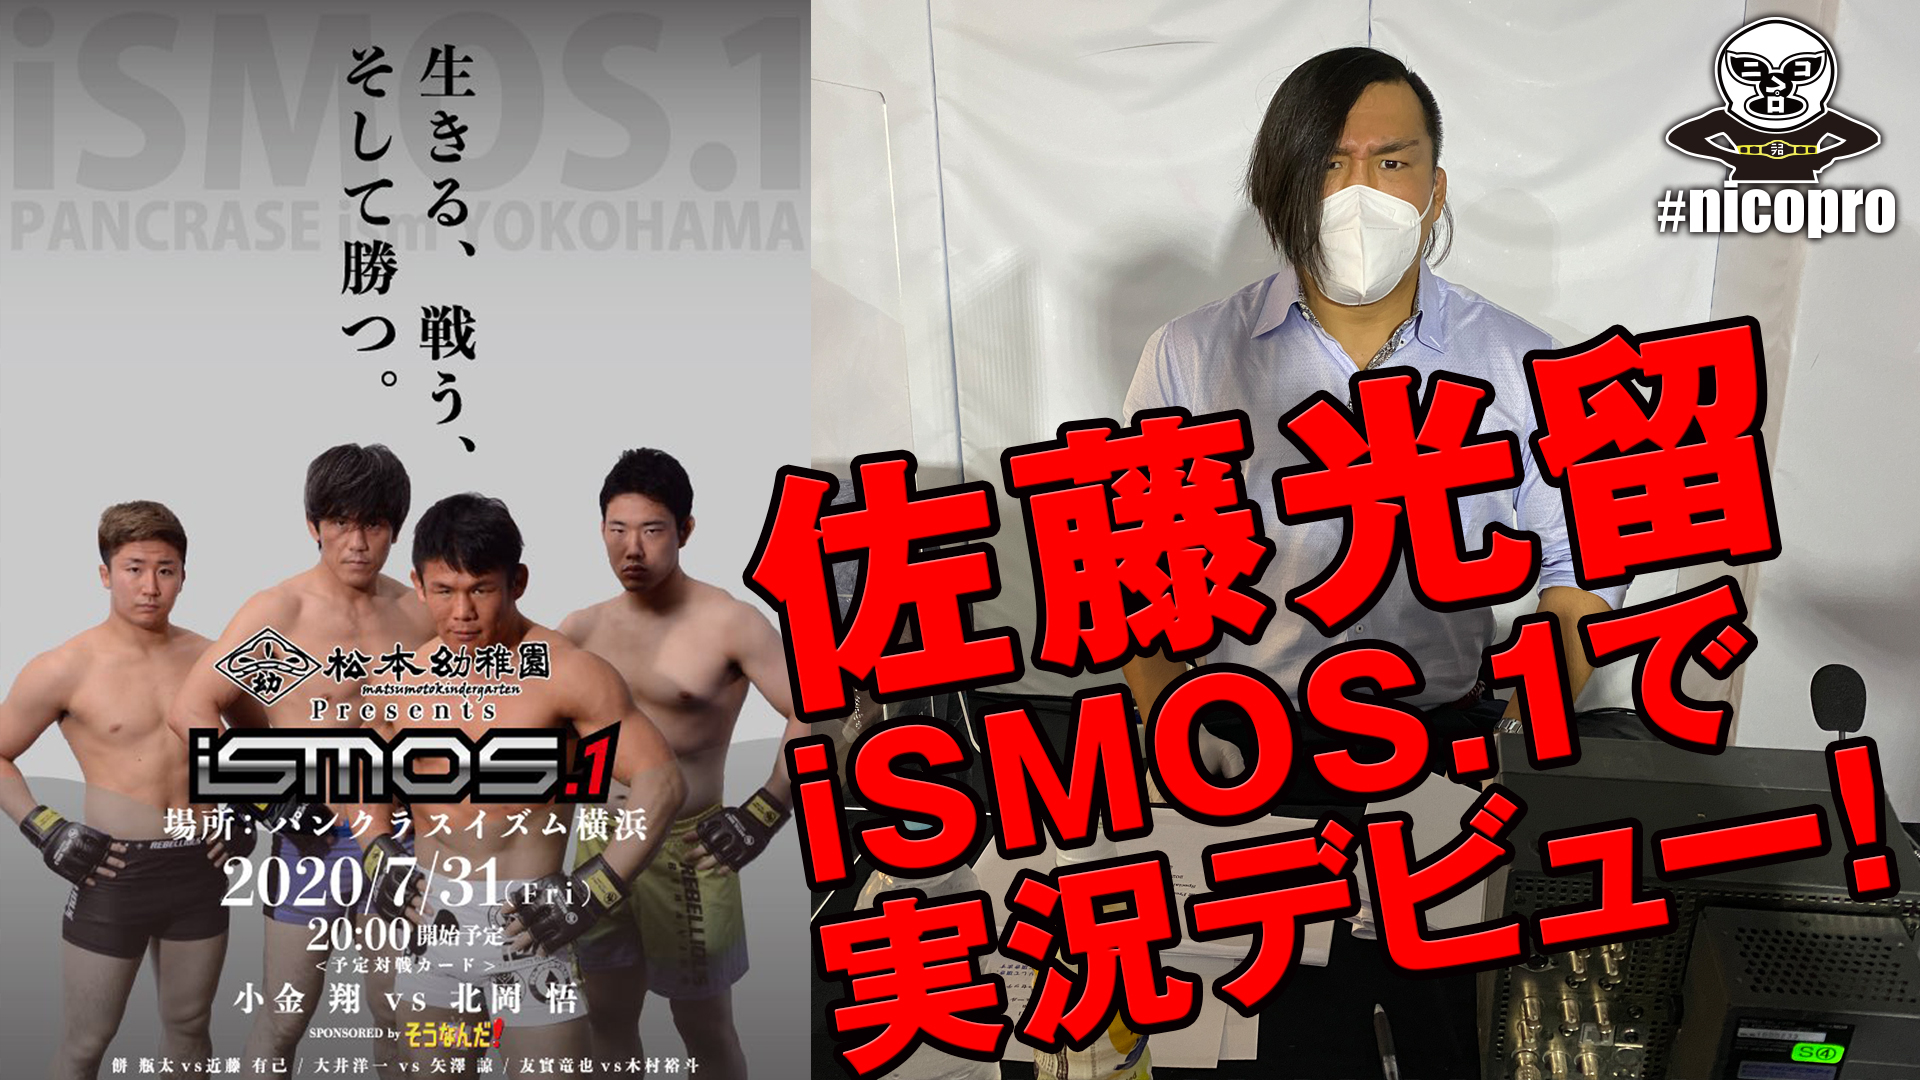 佐藤光留が「松本幼稚園Presents iSMOS.1 Special sponsored Yutrition」で実況デビュー！